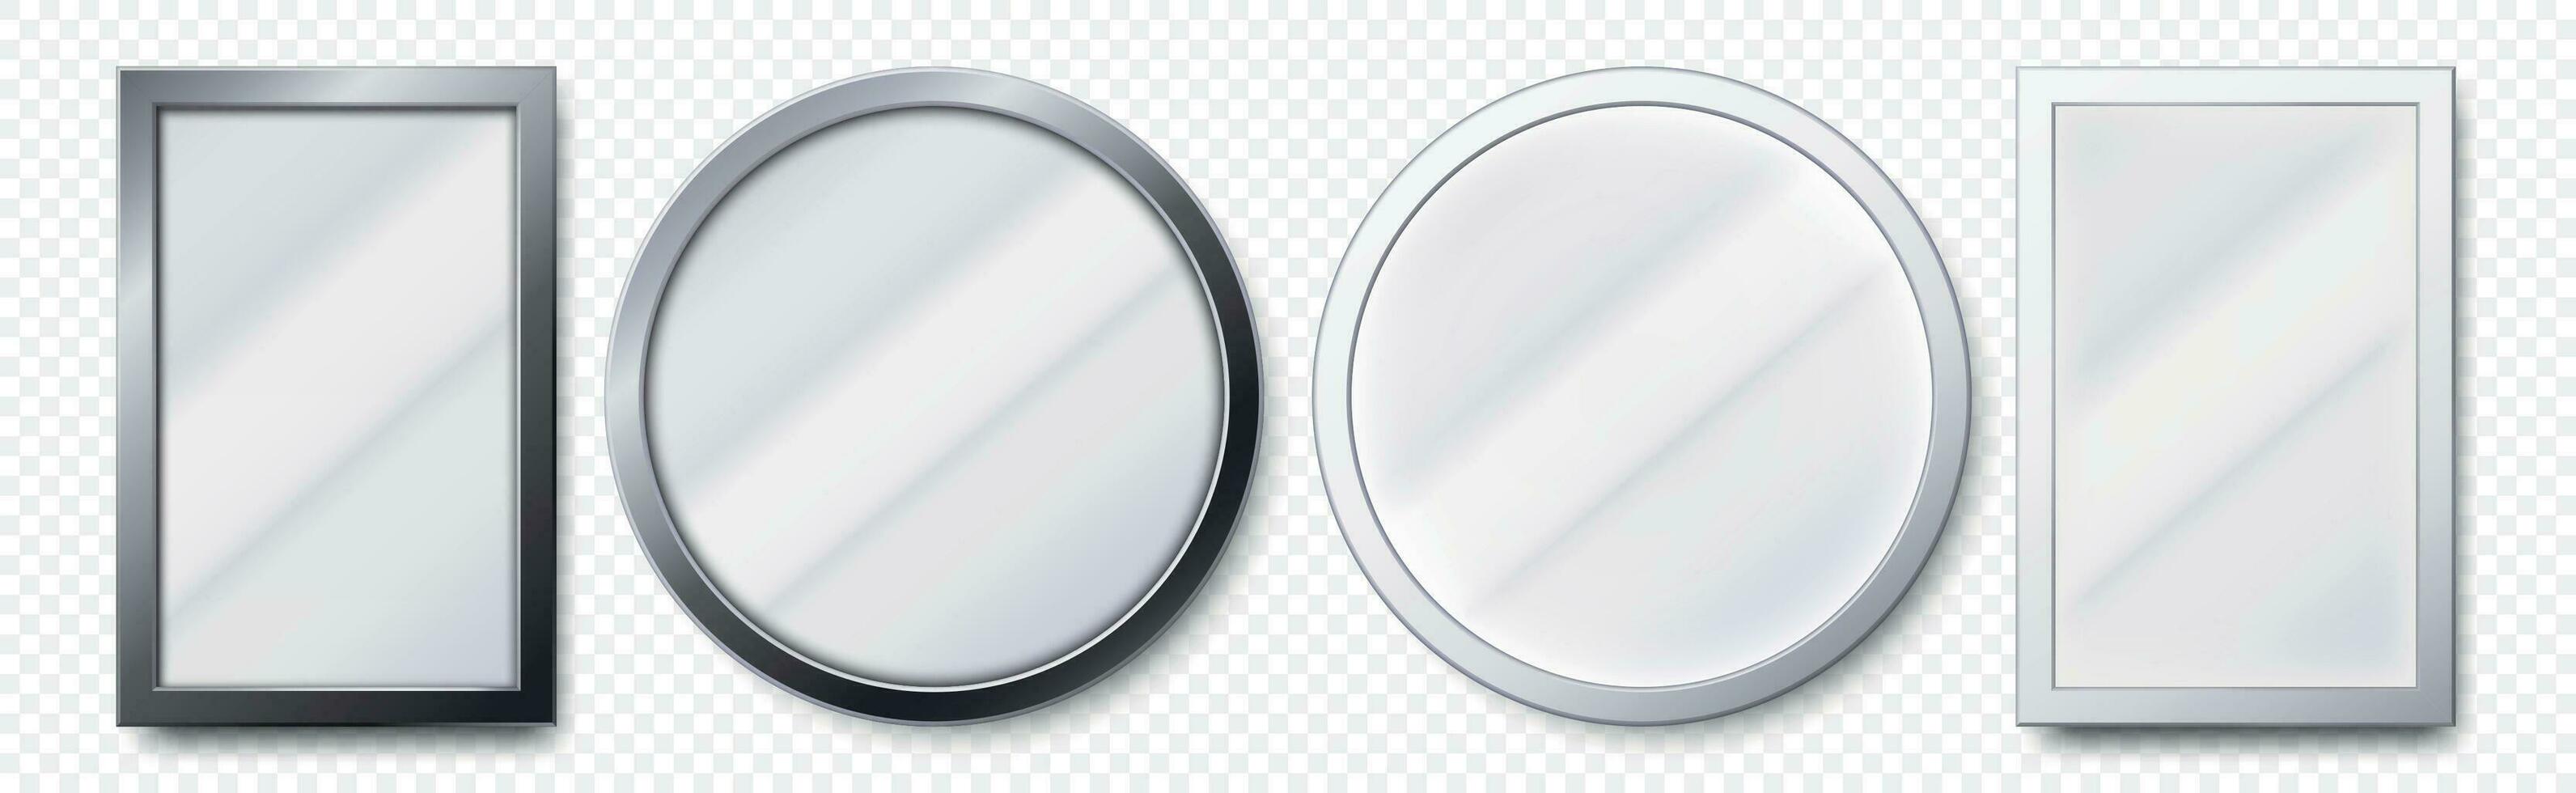 realistisch spiegels. metaal ronde en rechthoekig spiegel kader, wit spiegels sjabloon 3d vector reeks